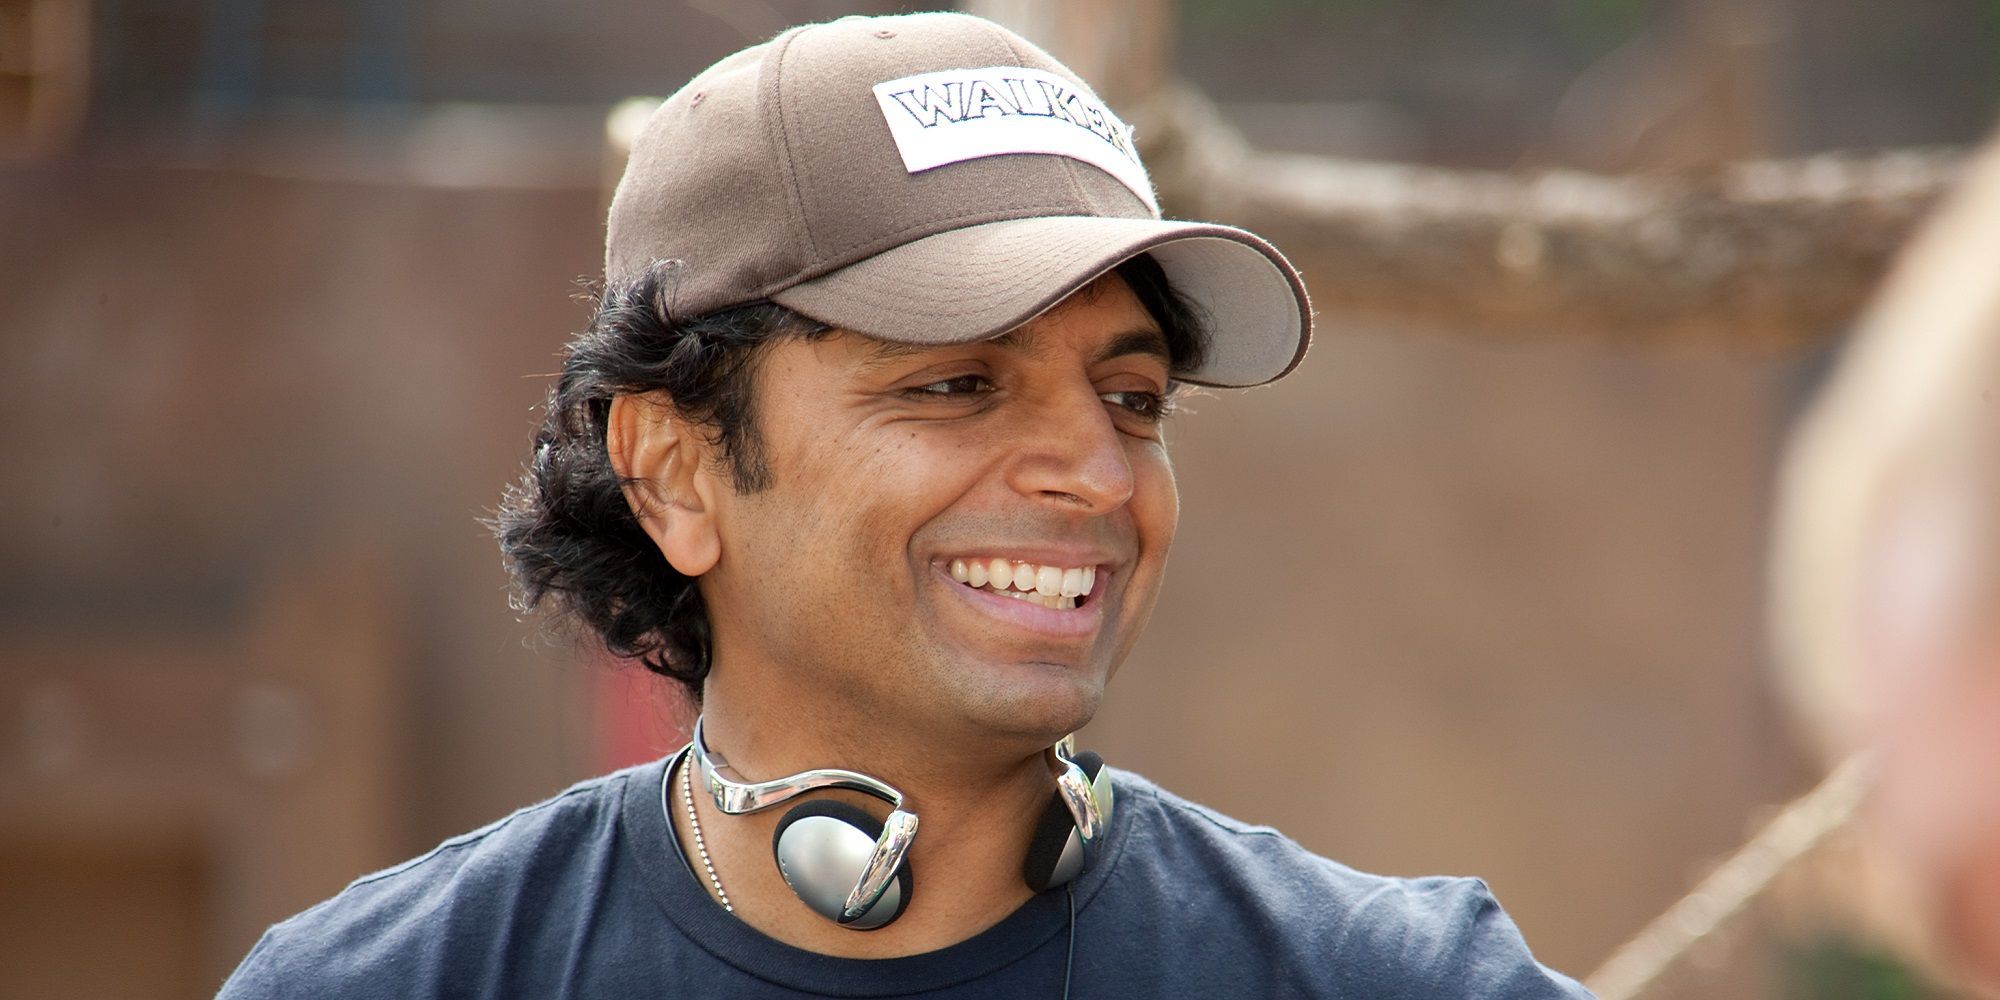 Director M. Night Shyamalan